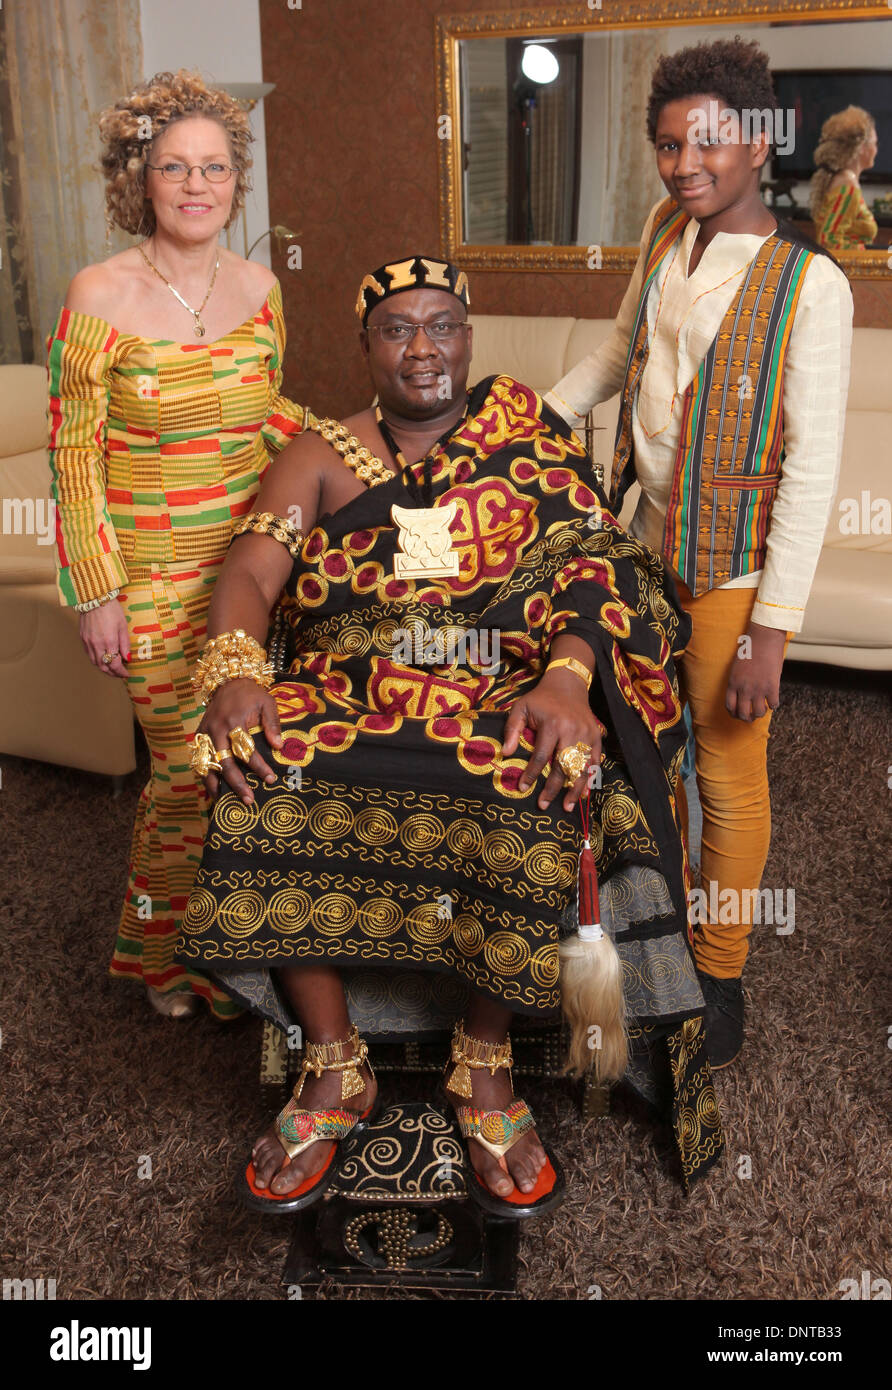 Bielefeld, Allemagne. Dec 10, 2013. Didi de greffe (C) du Ghana porte des  vêtements noble et bijoux en or sur un trône à côté de son épouse Lisa et  son fils Marvin (